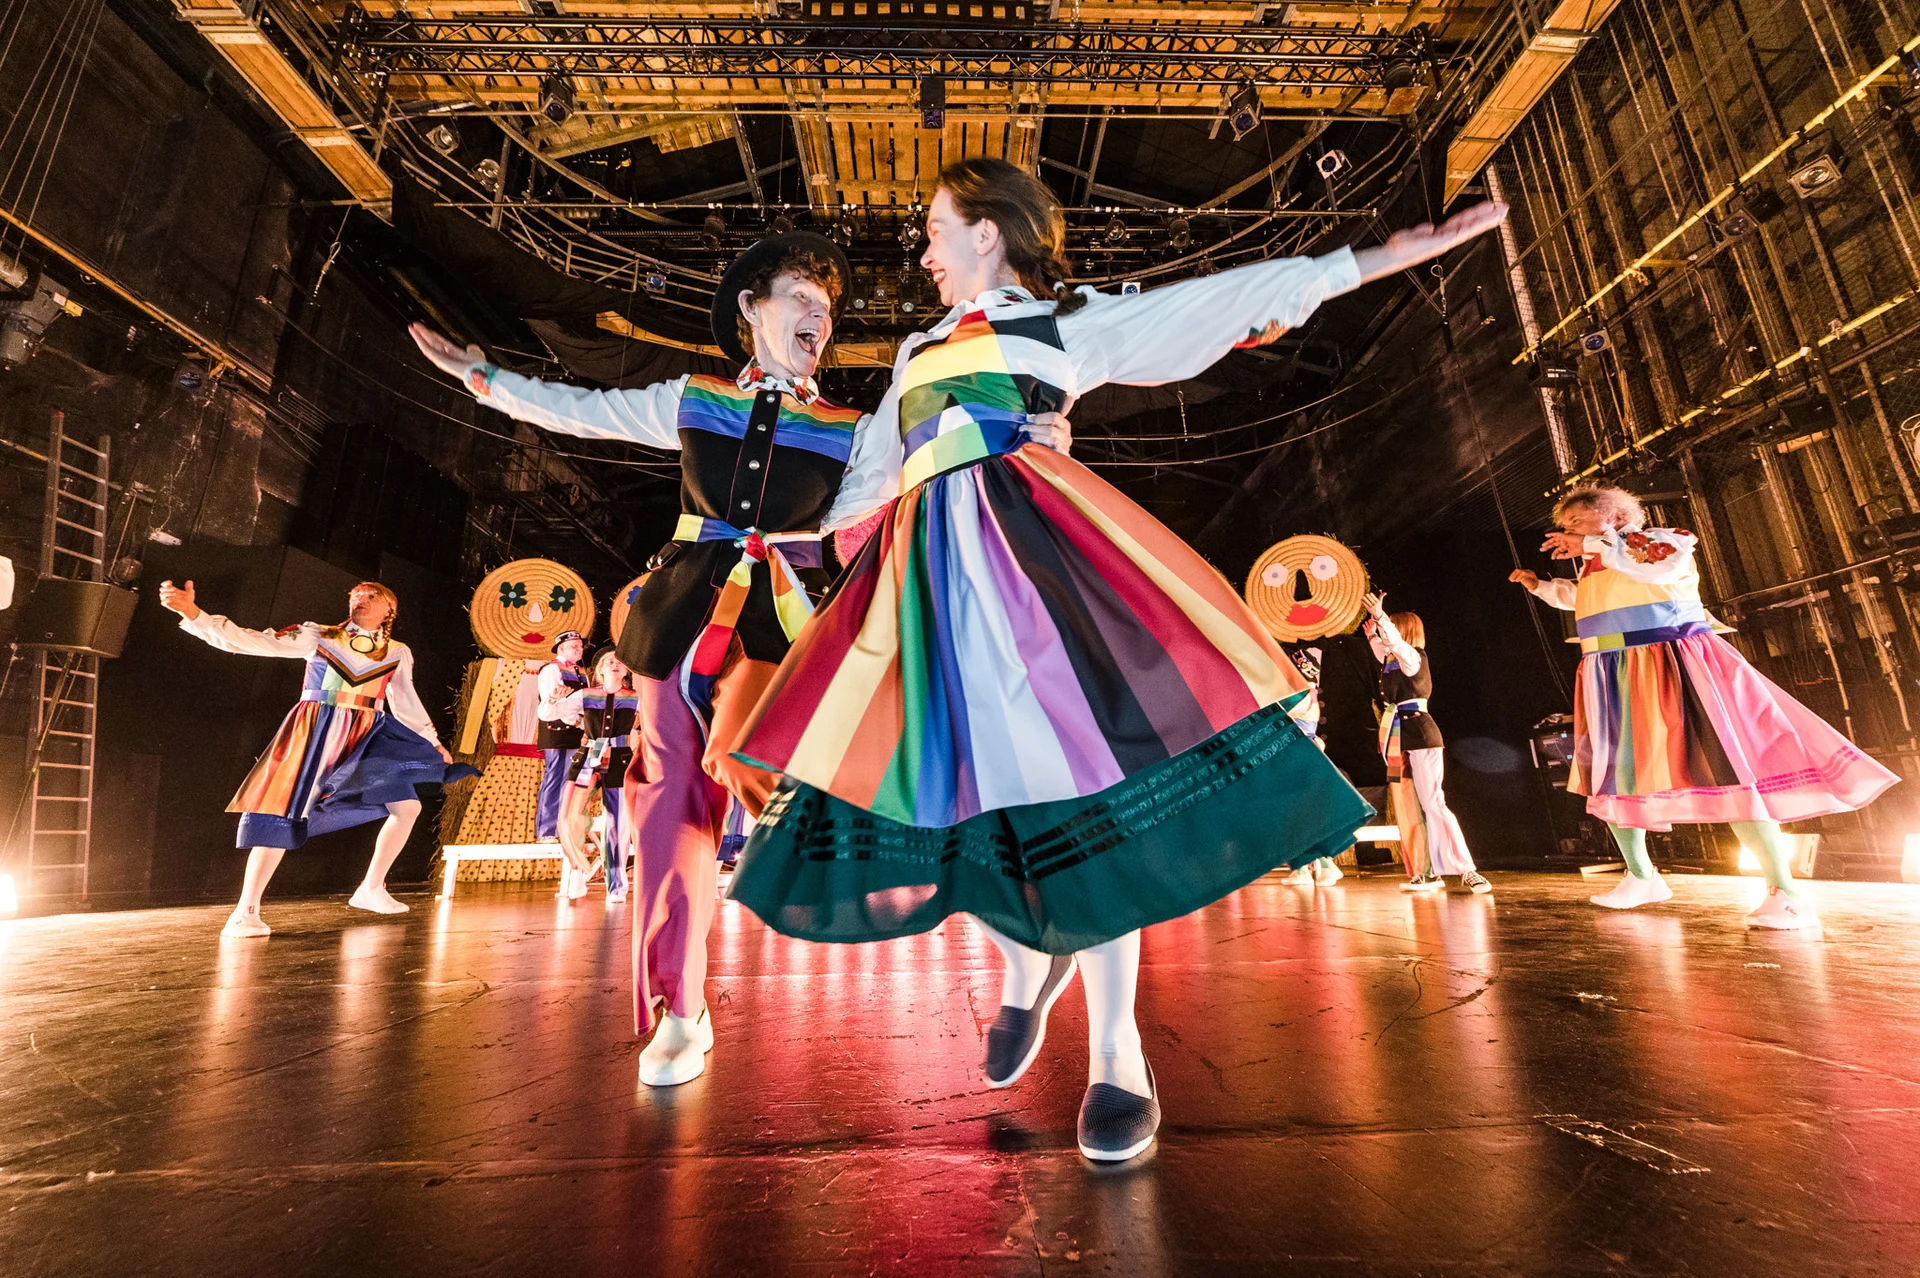 Dwie kobiety tańczą w strojach inspirowanych folklorem i flagami LGBTQ+.